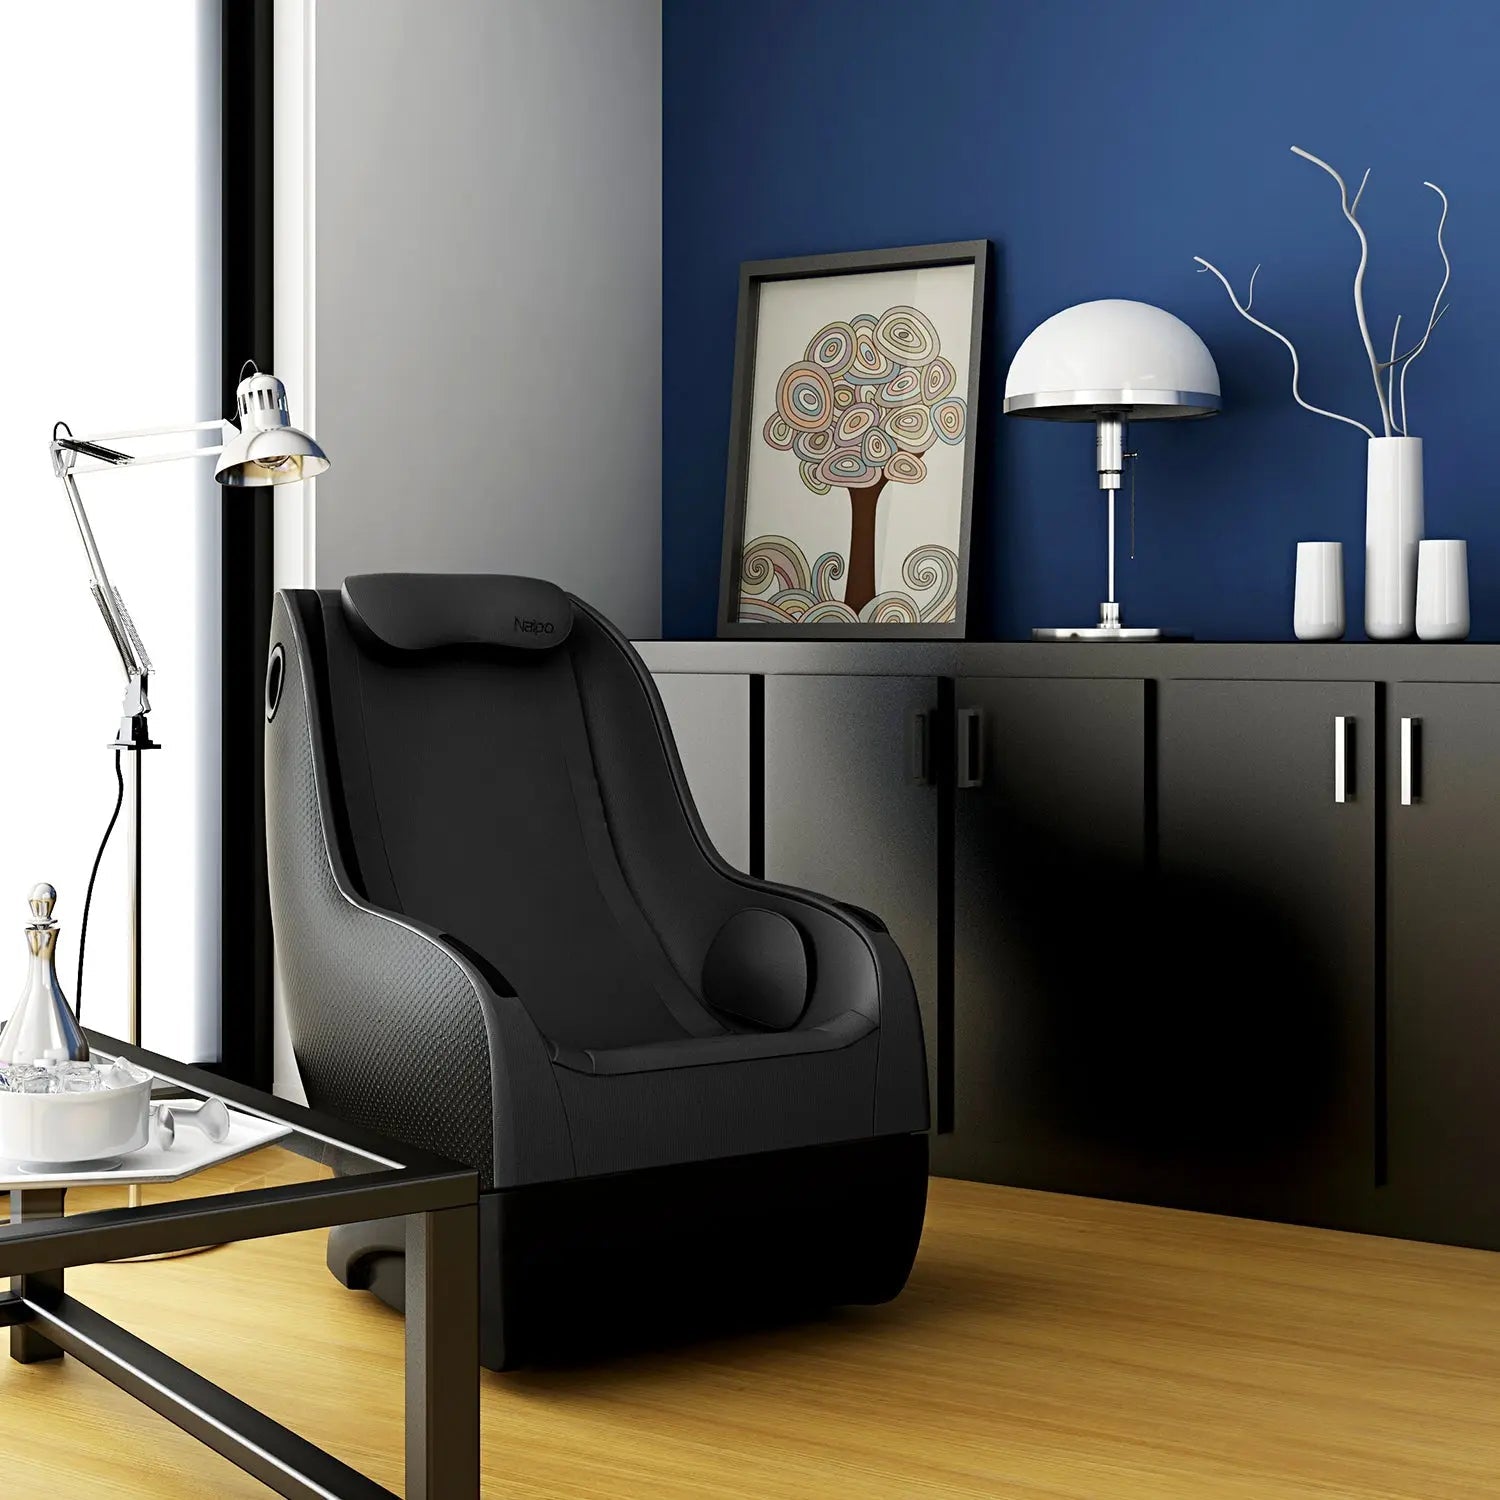 Fauteuil de massage NAIPO Shiatsu, design moderne, haut-parleurs, Bluetooth, économiseur d'espace